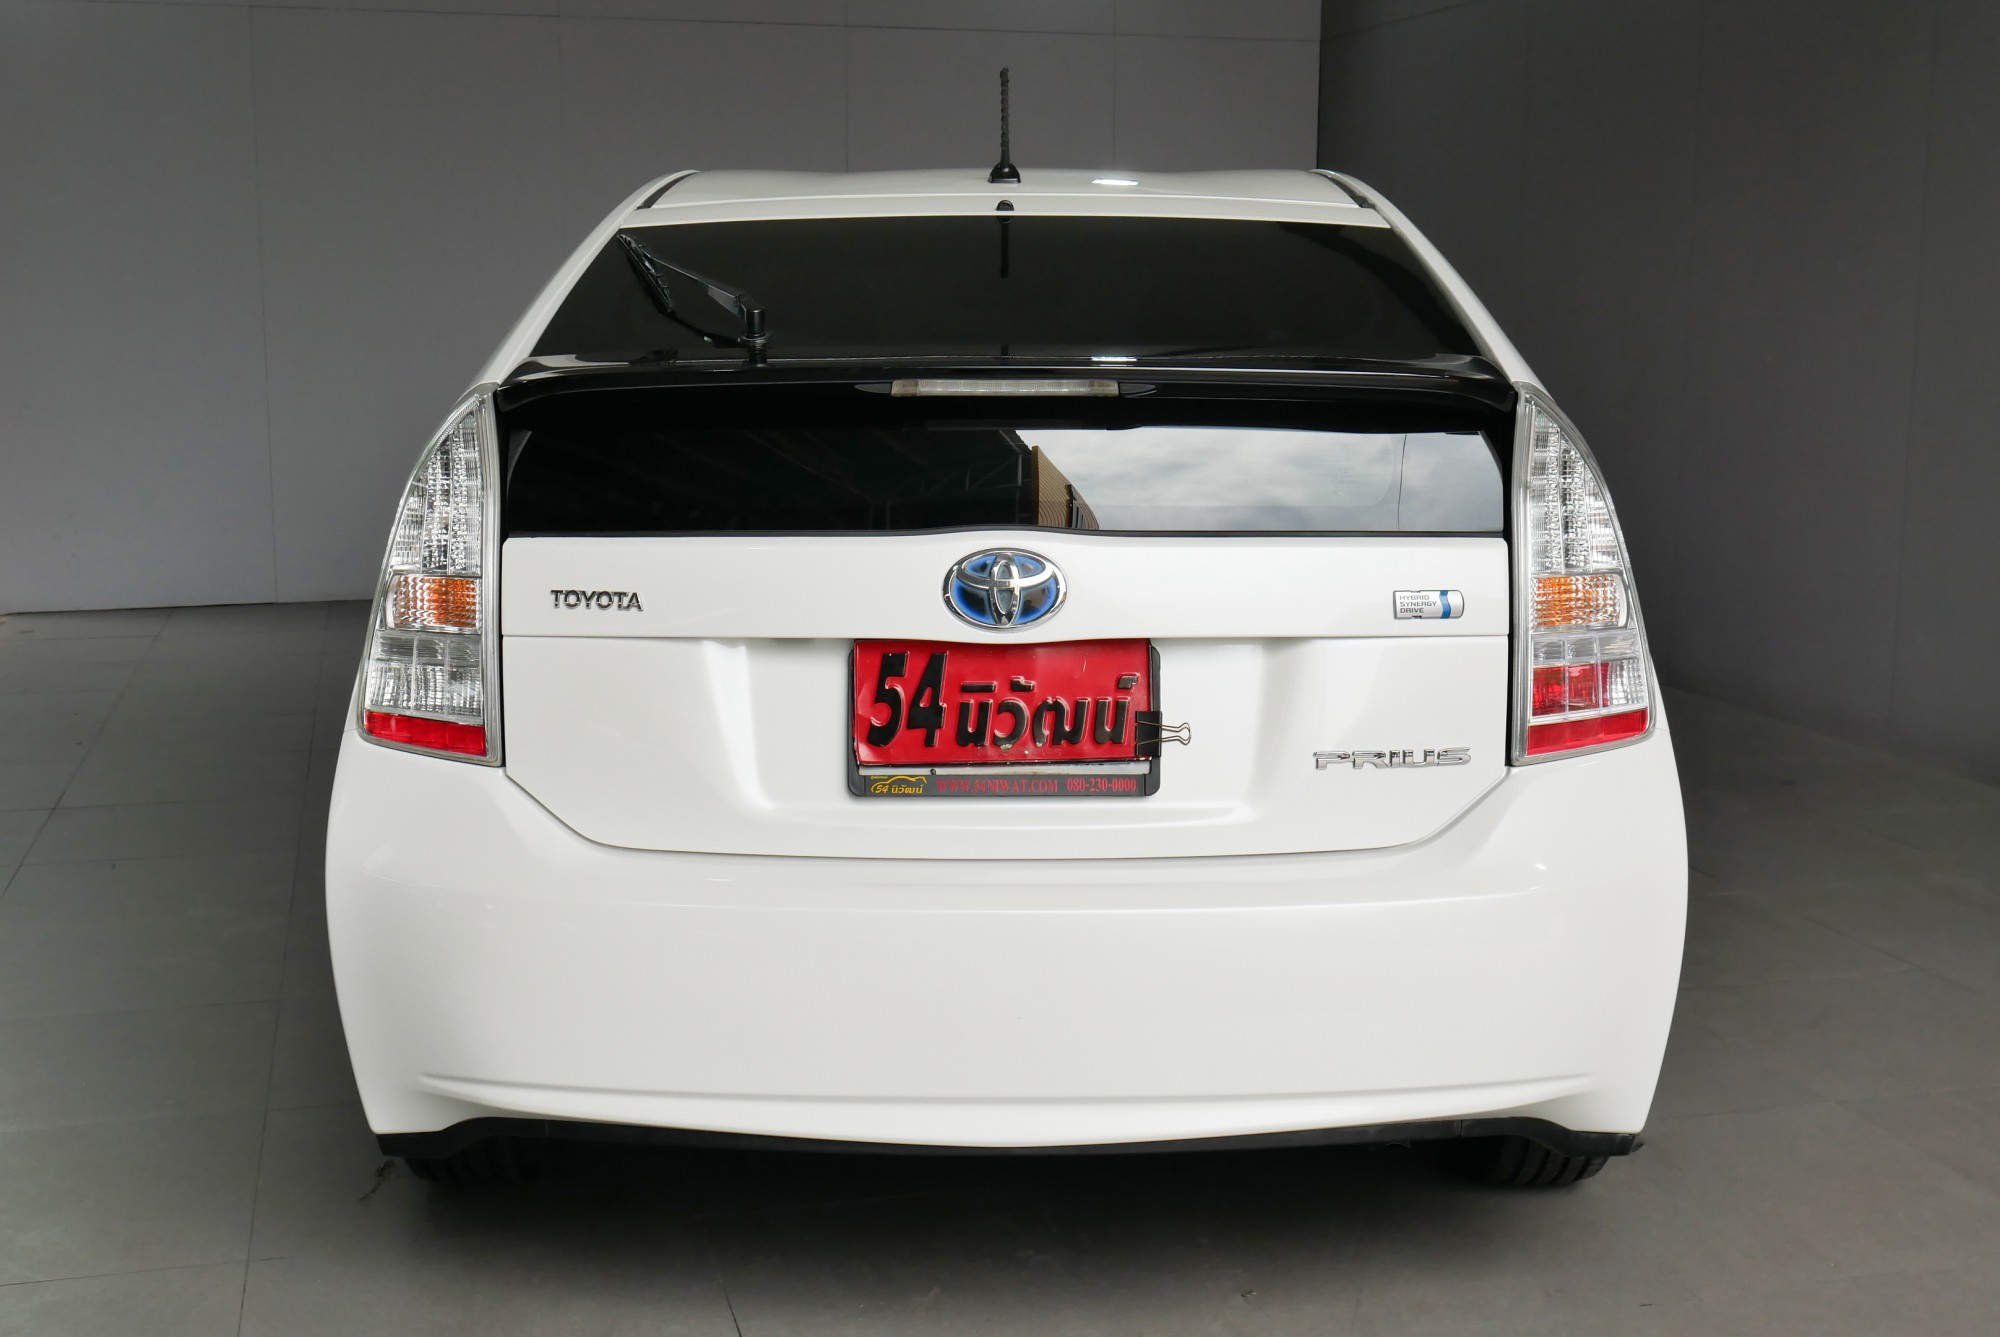 Toyota Prius ปี 2011 สีขาว